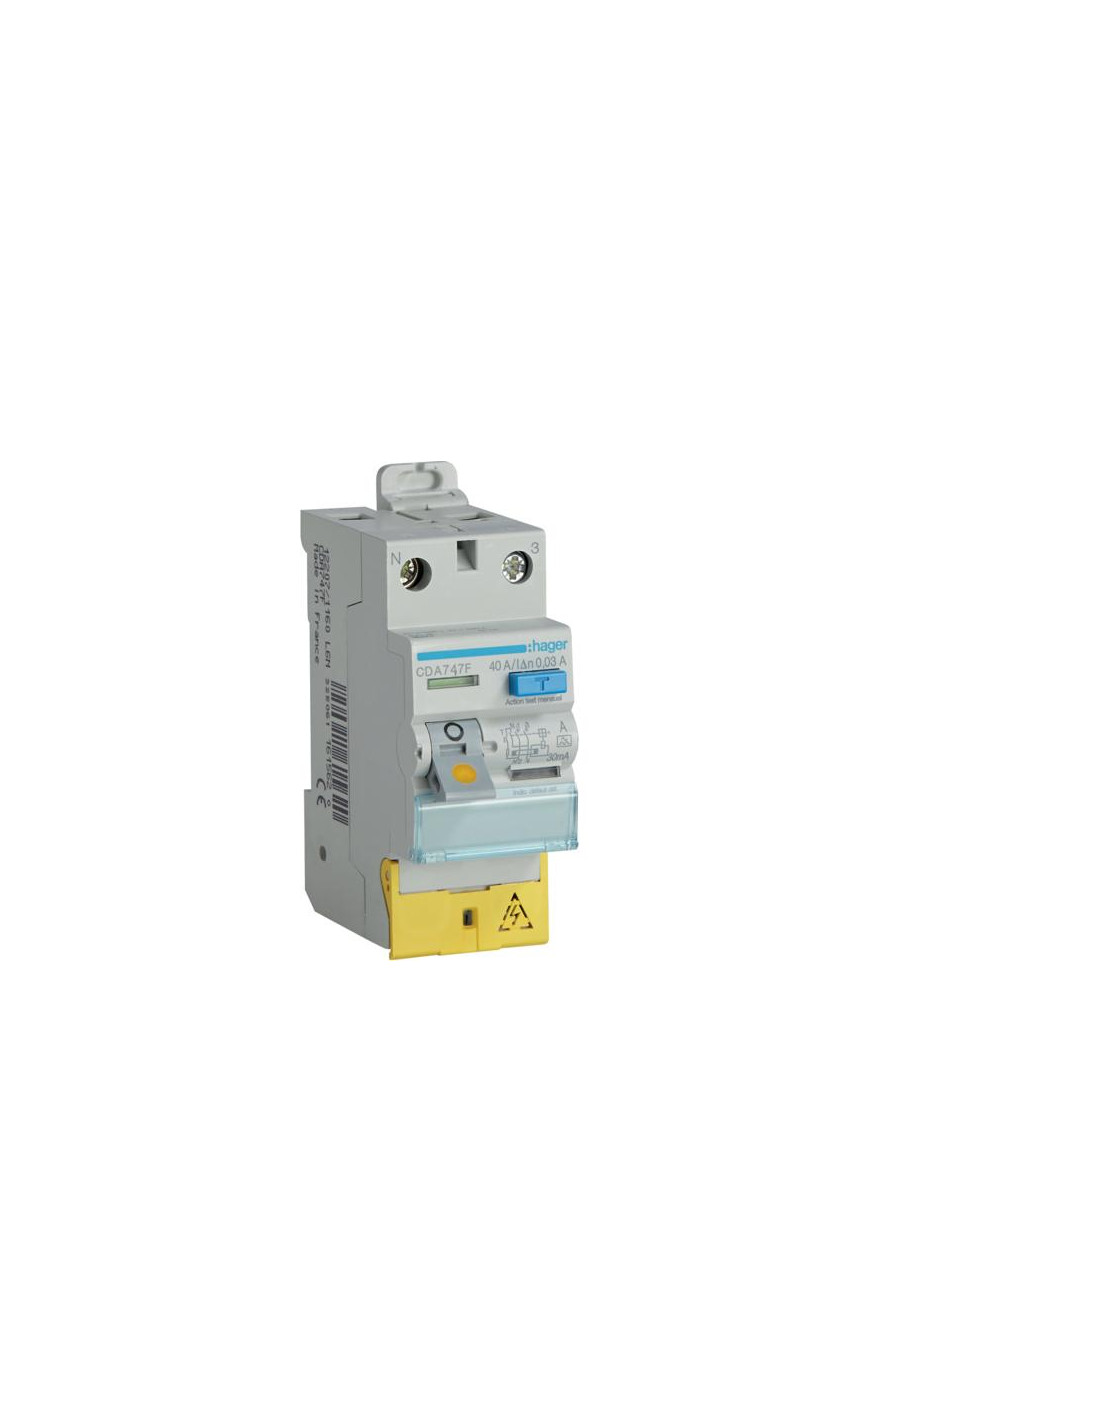 Interrupteur différentiel 40A 1P+N 30mA connexion haut/haut Classe